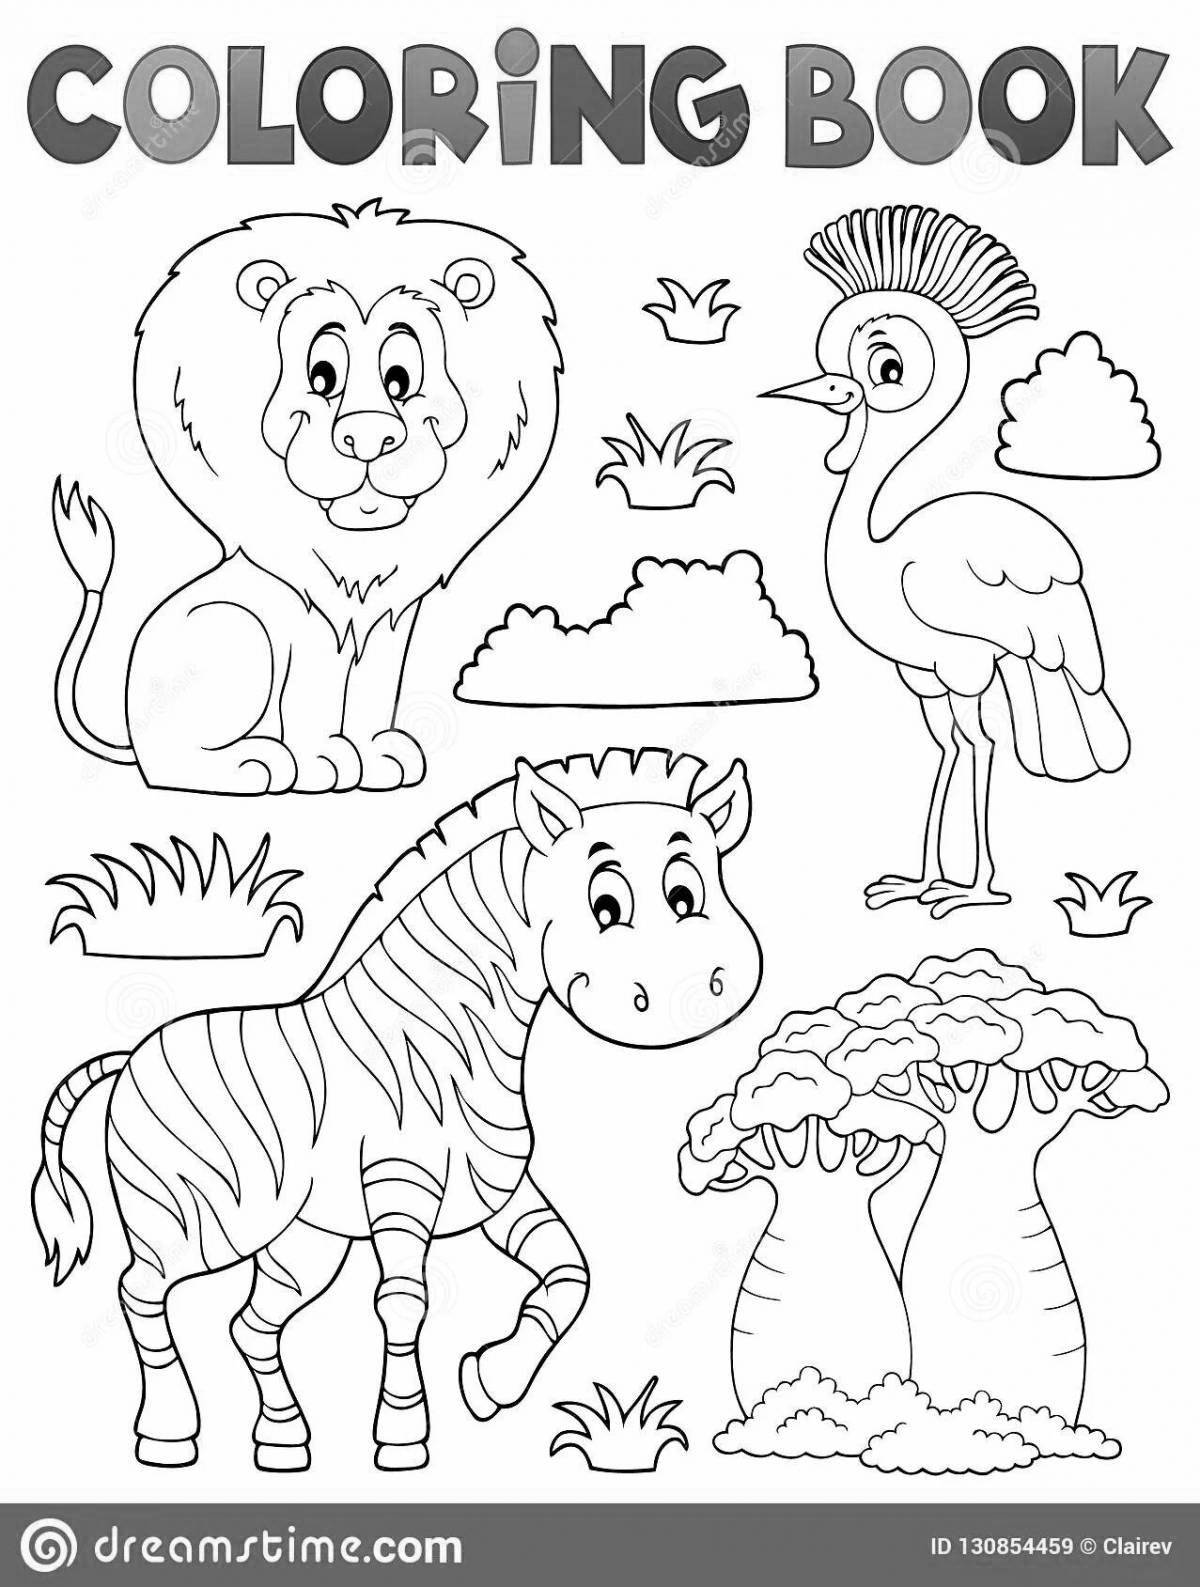 Великолепная раскраска африканских животных для детей 5-7 лет